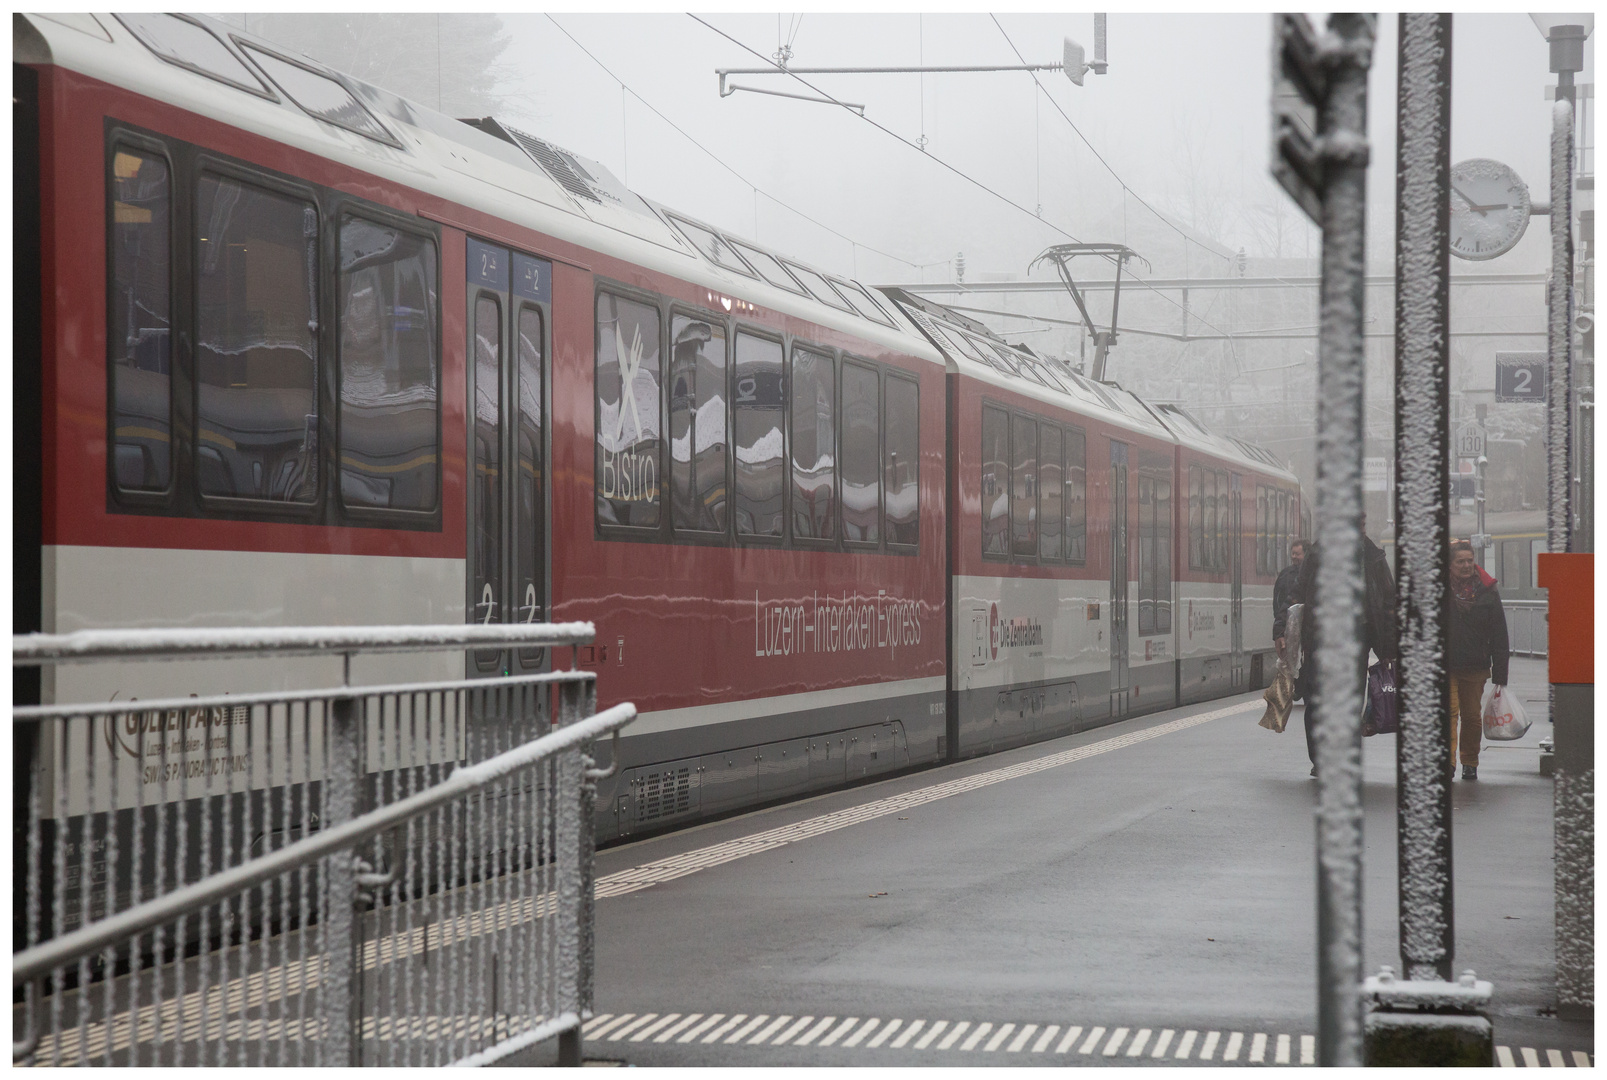 Luzern-Interlaken-Express